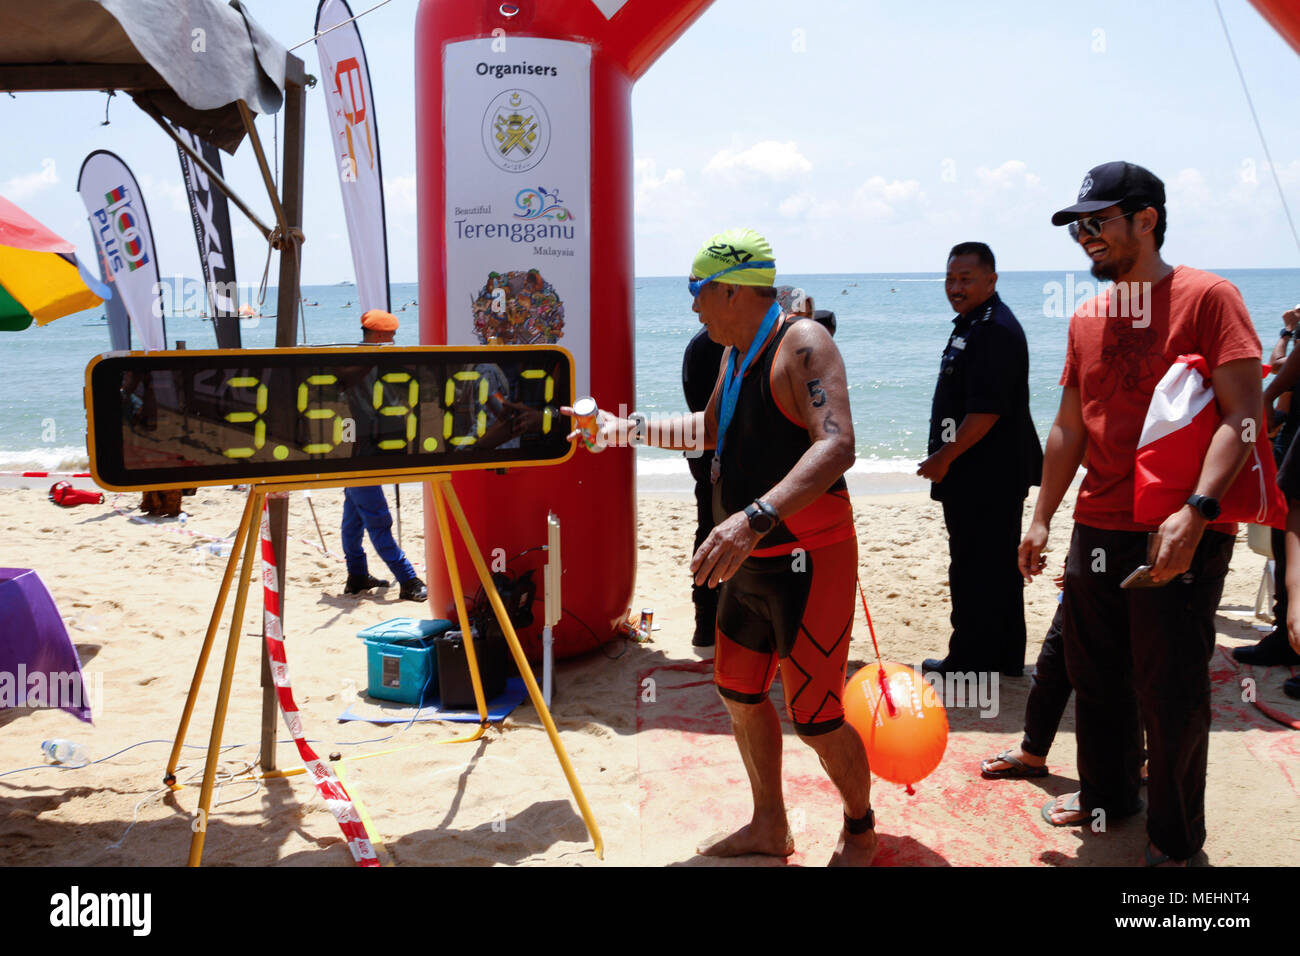 Marang, Terengganu, en Malasia. El 22 de abril de 2018. Swimathon Internacional 2018. Anualmente una competición de natación en aguas abiertas, con una distancia de 6,5 km de la playa de la isla Kapas a Kelulut en Marang. El mayor competidor, de 69 años de edad Zahari Samat con un tiempo de 3:59:00 Crédito: Tengku Mohd Yusof/Alamy Live News Foto de stock